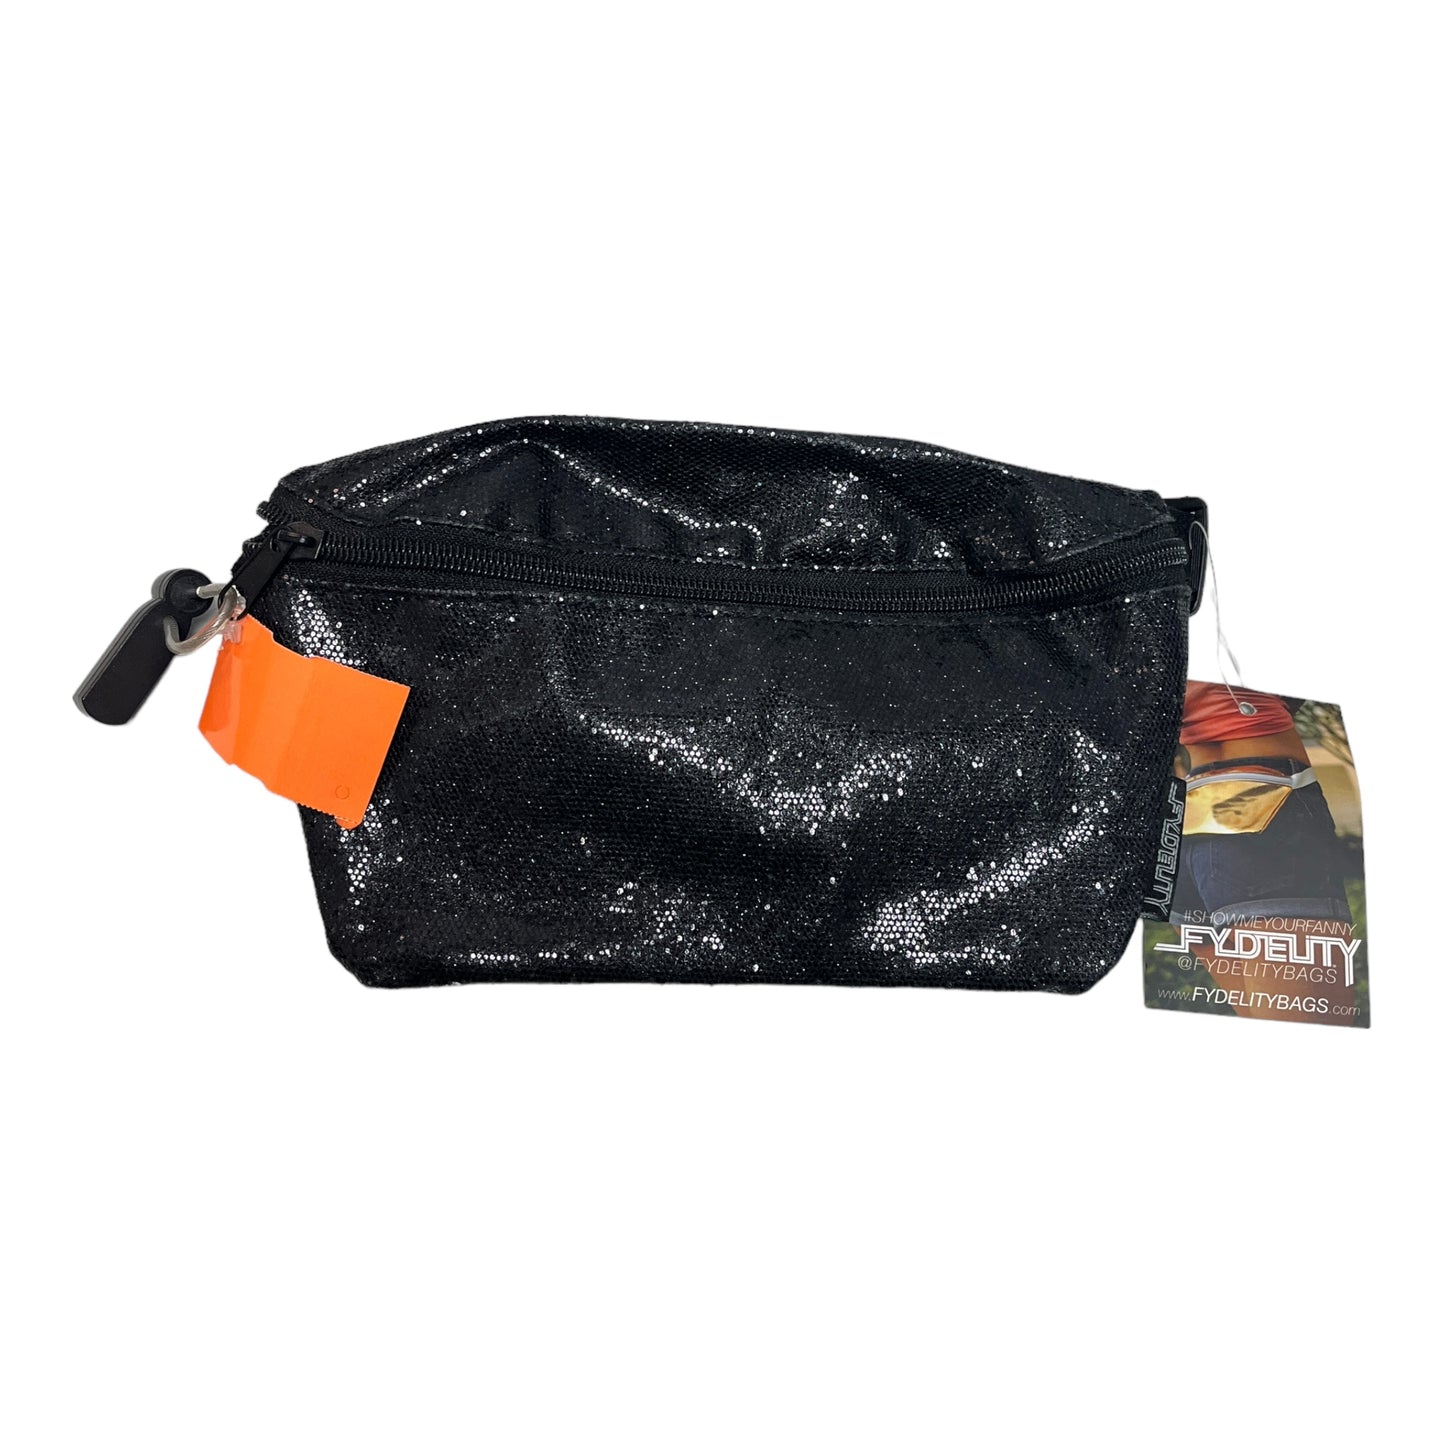 Belt Bag By Fydeltiy  Size: Medium